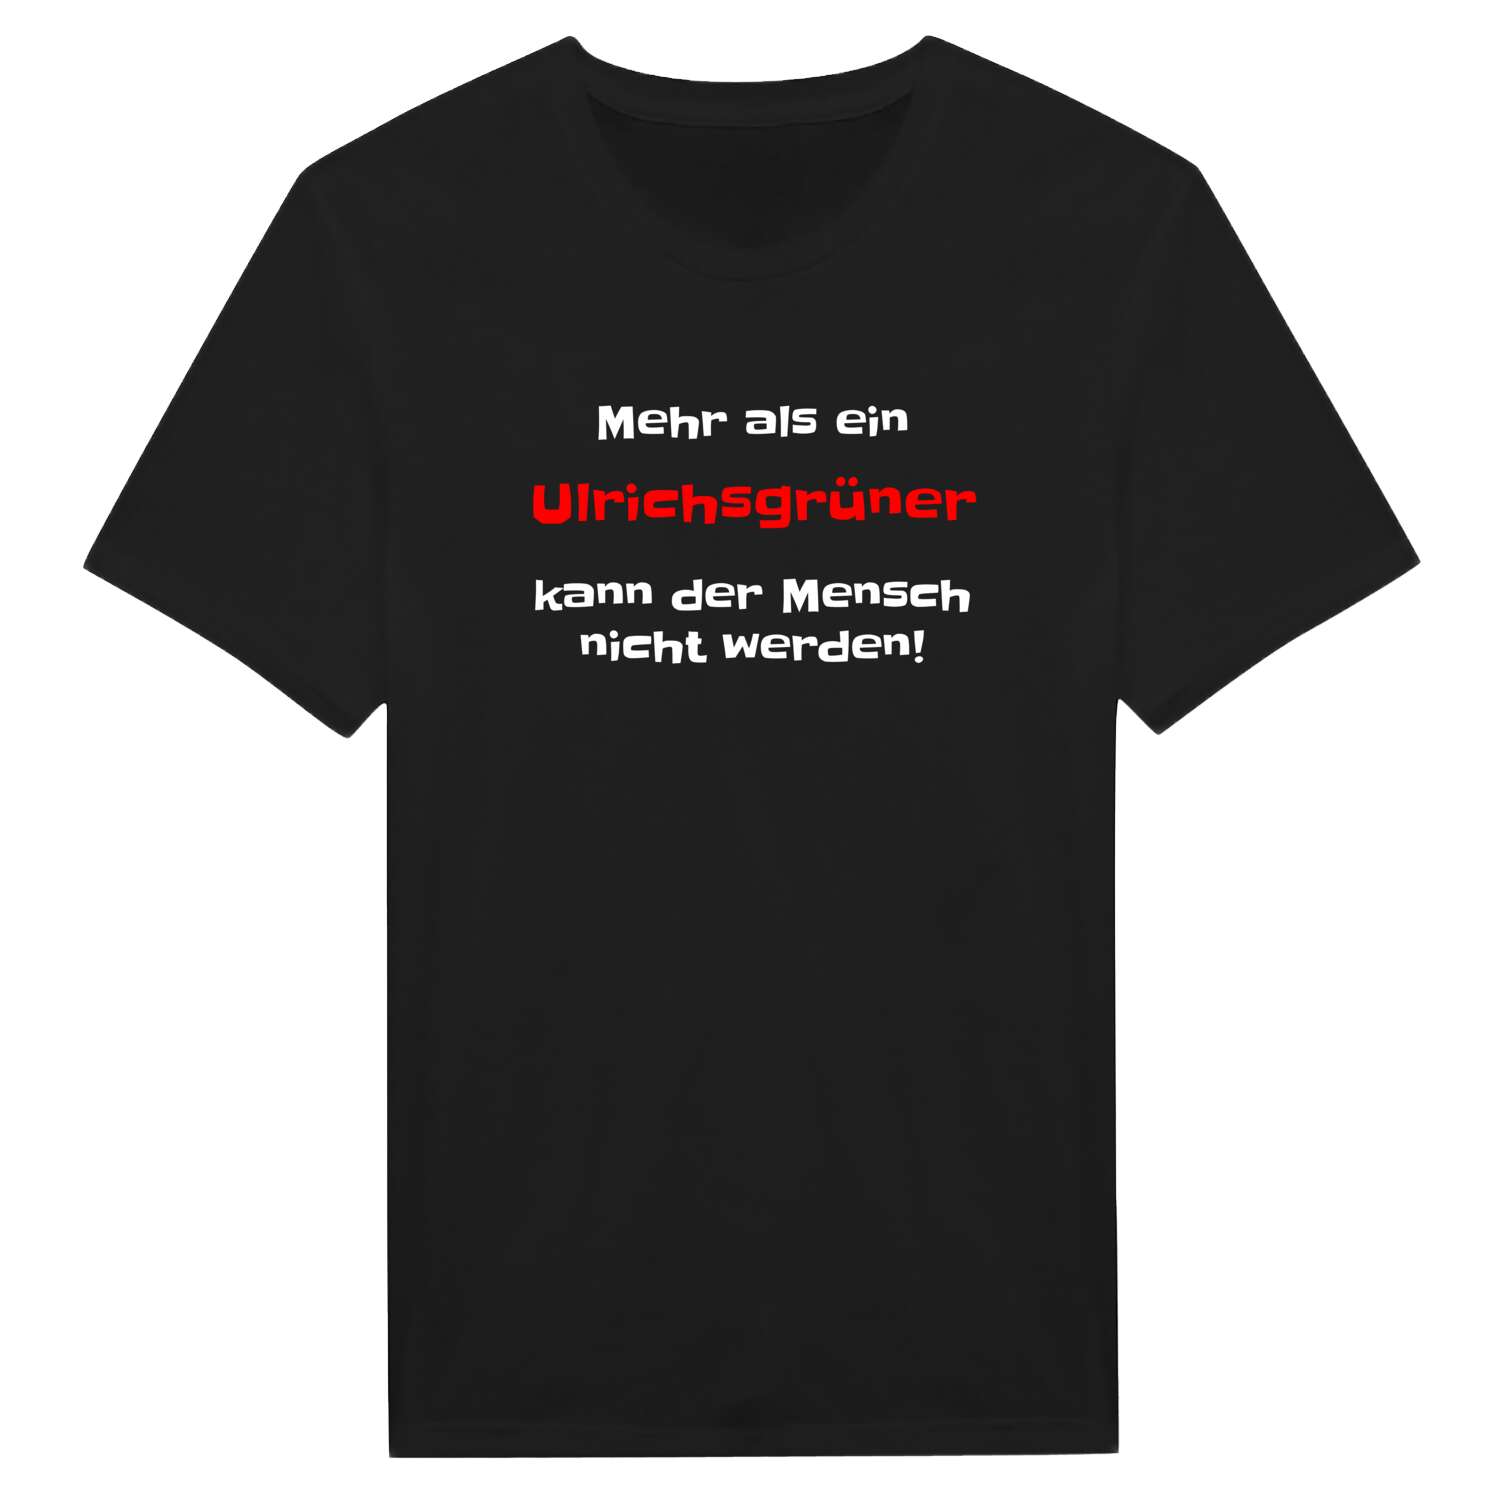 Ulrichsgrün T-Shirt »Mehr als ein«